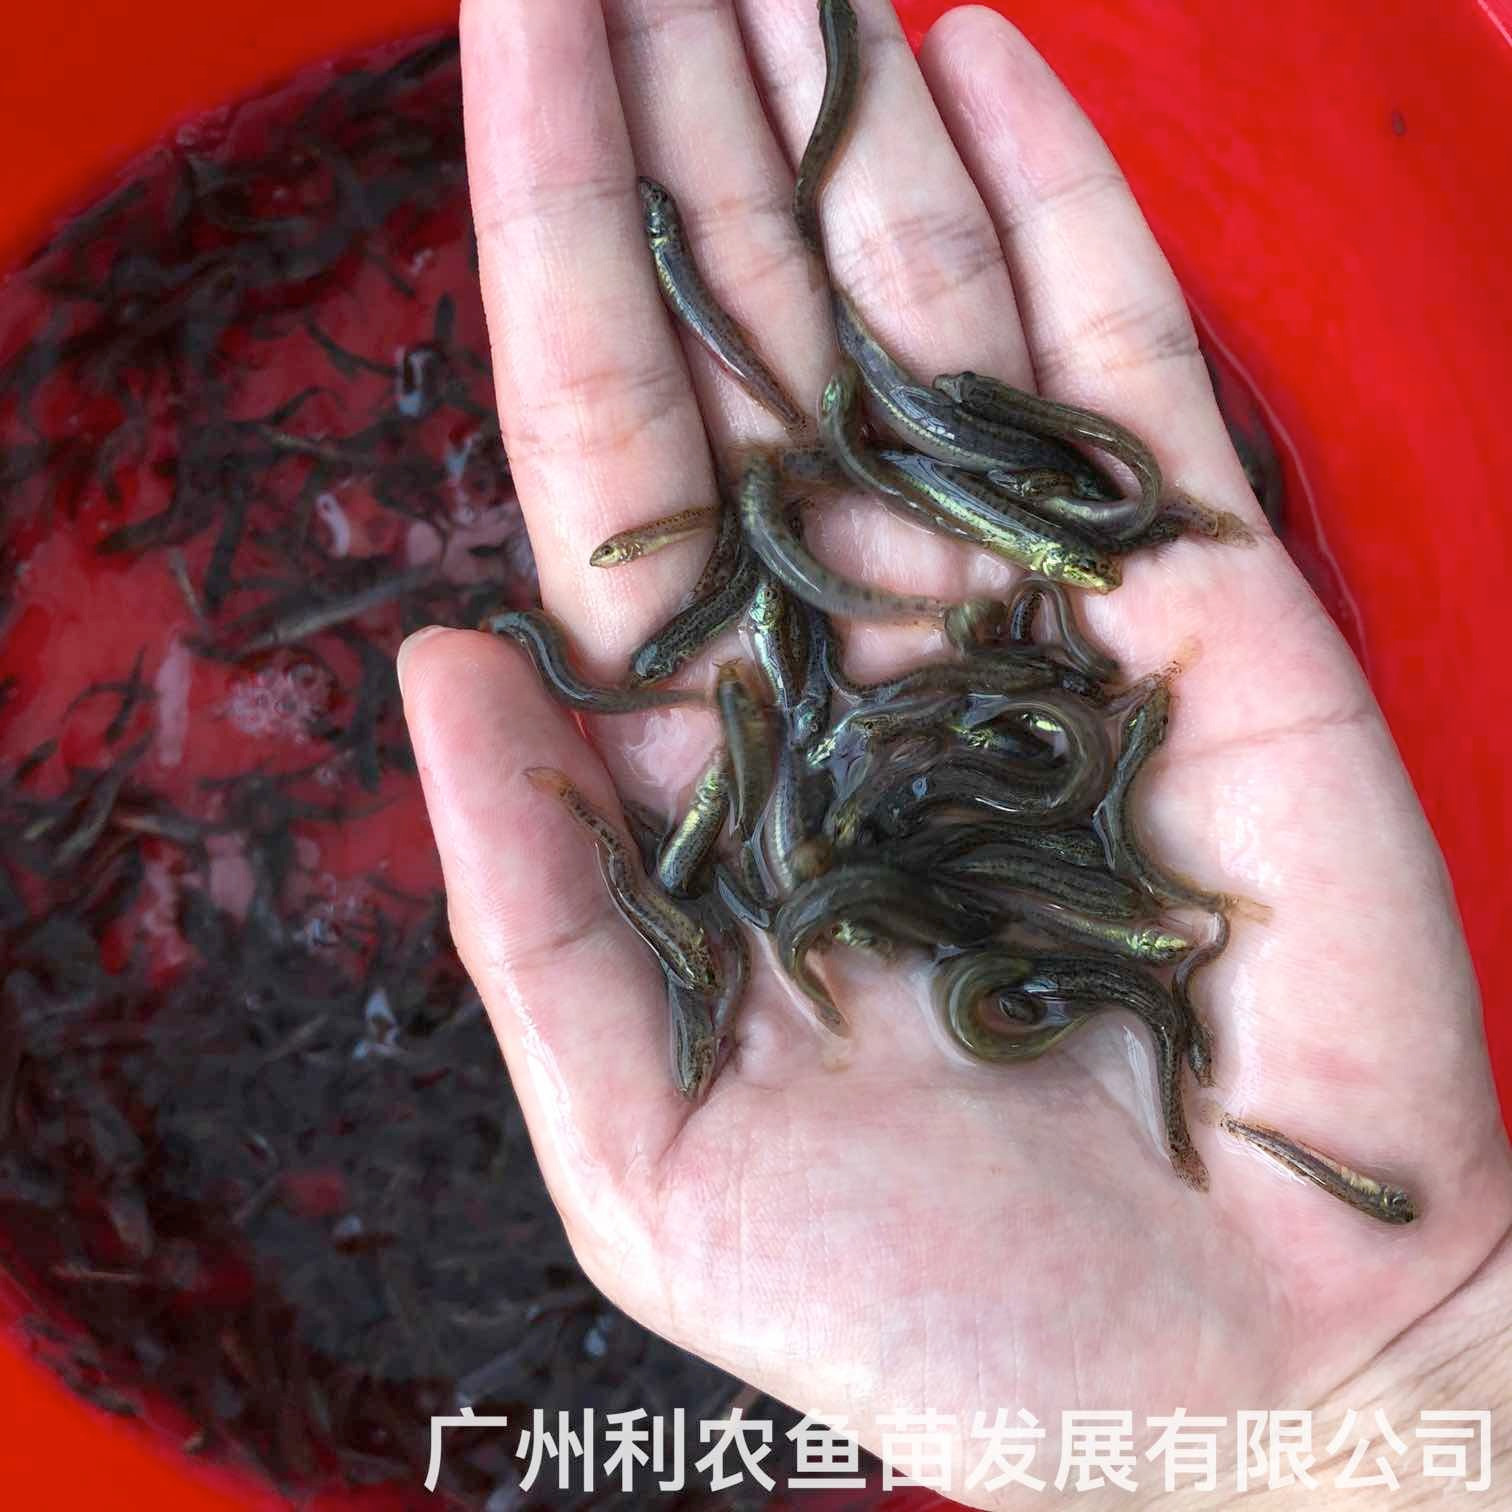 湖南郴州台湾泥鳅苗出售出售湖南张家界泥鳅鱼苗批发养殖基地